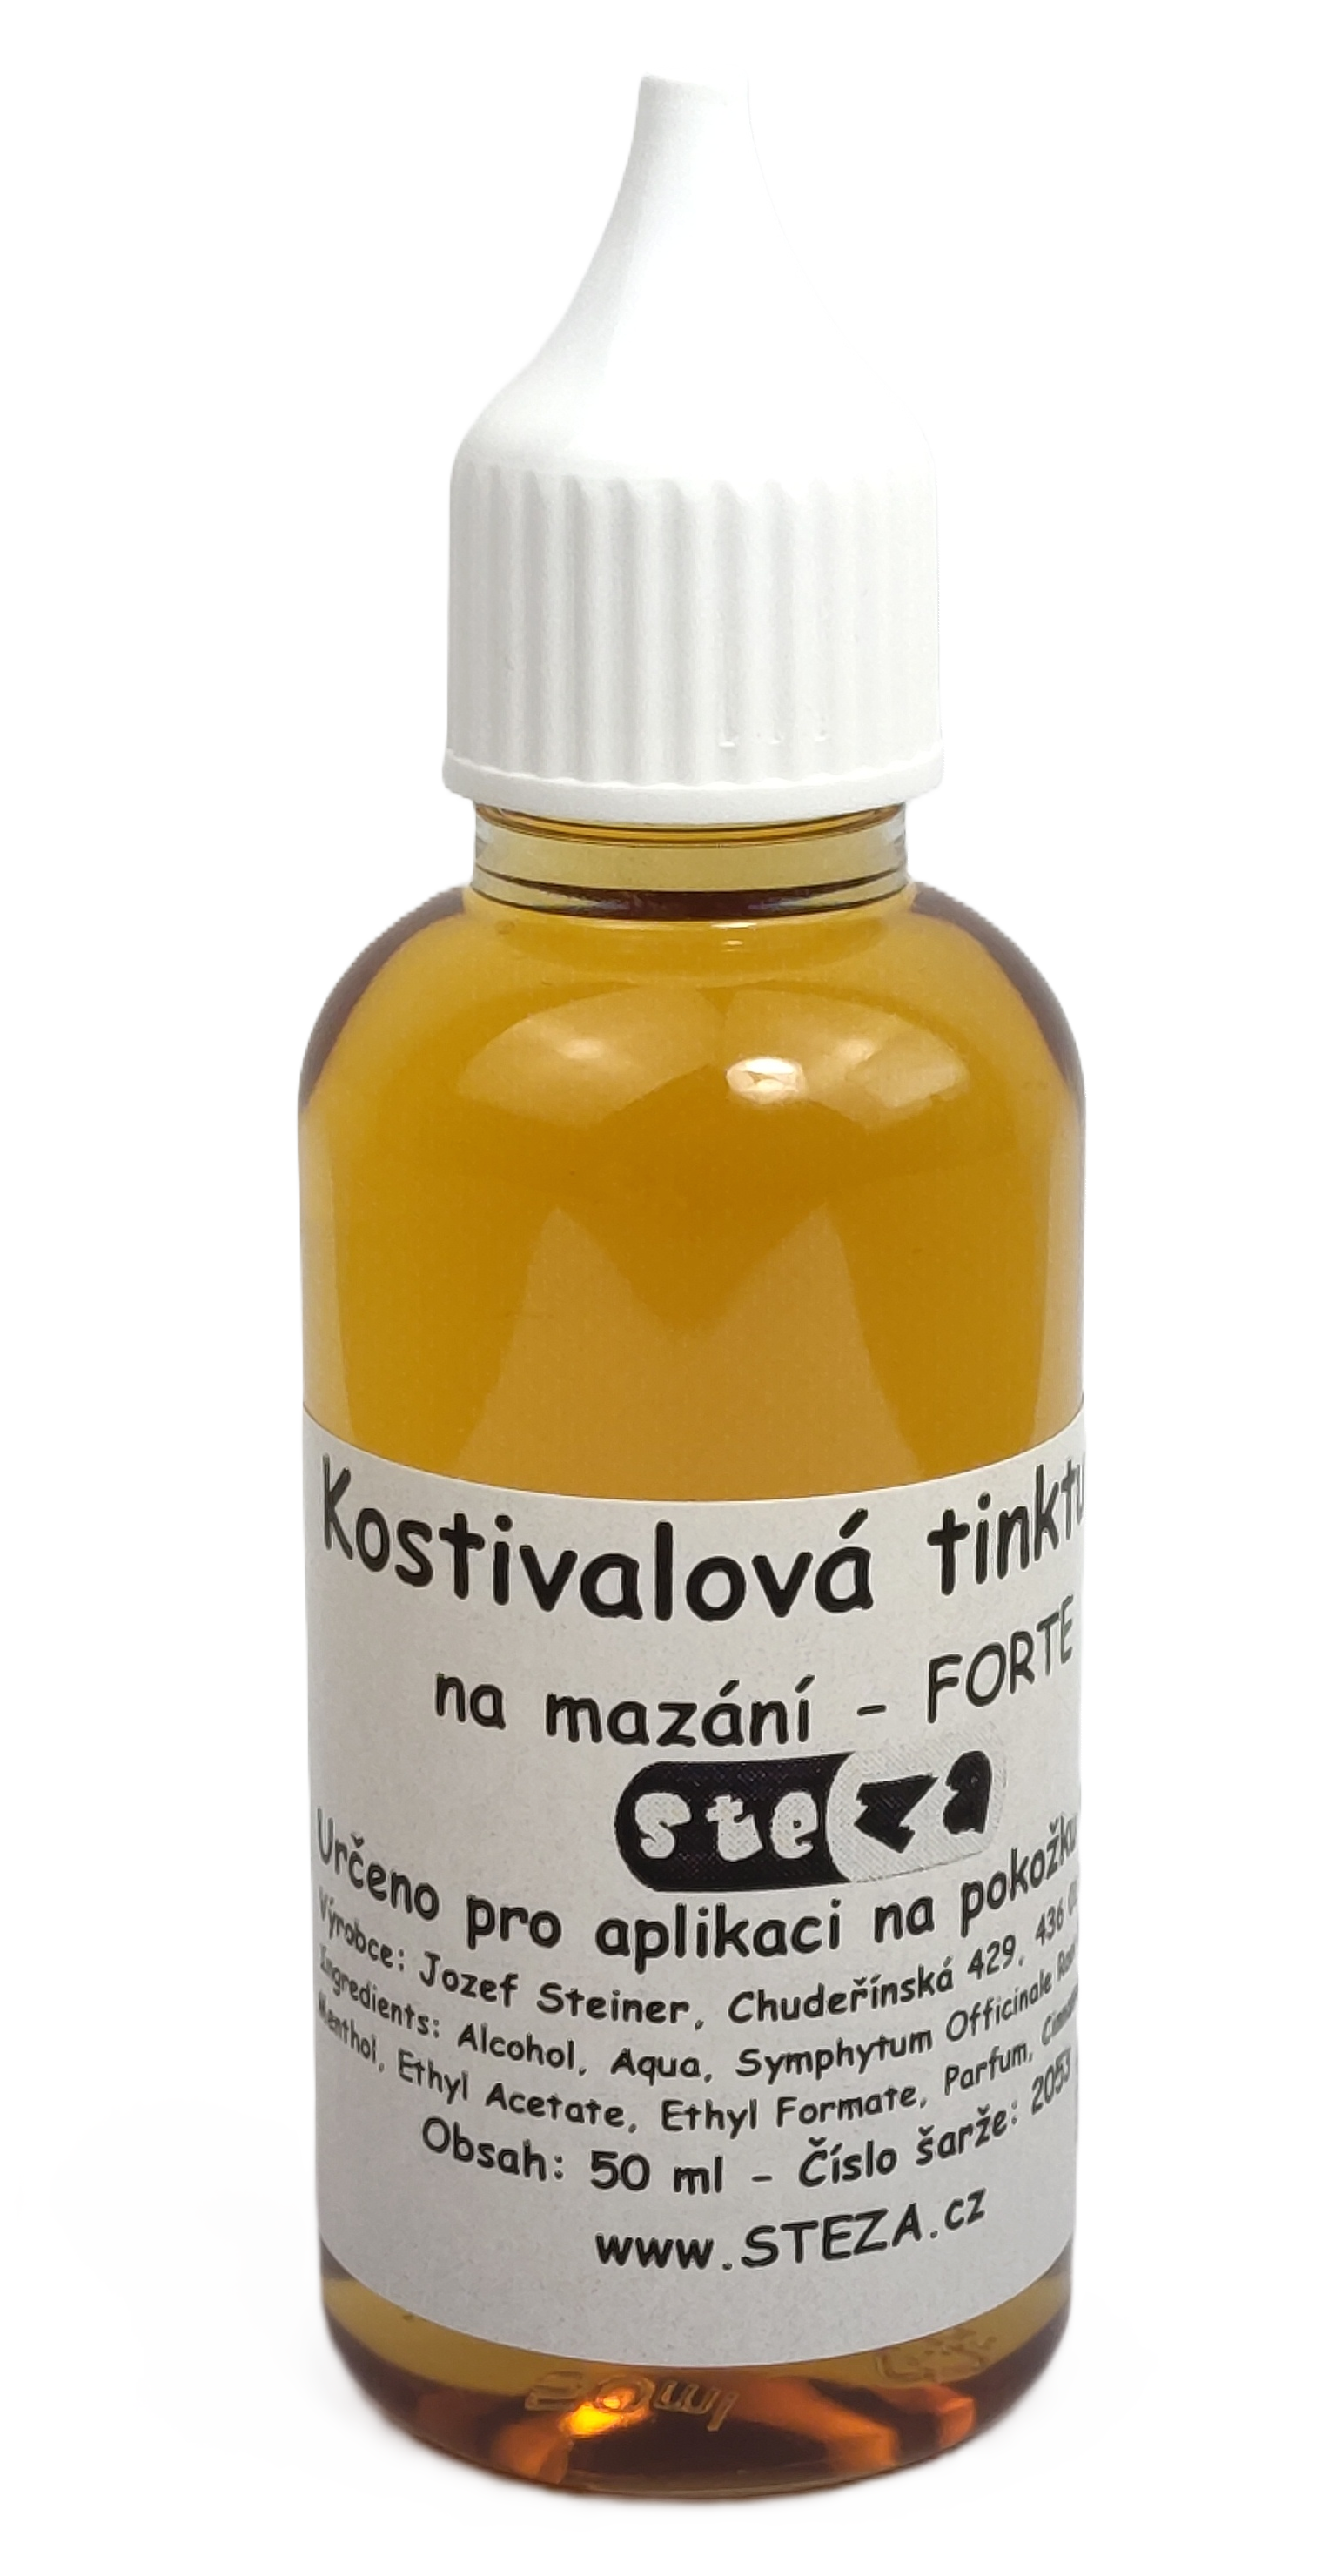 STEZA - Kostivalová tinktura na mazání - FORTE 50 ml.